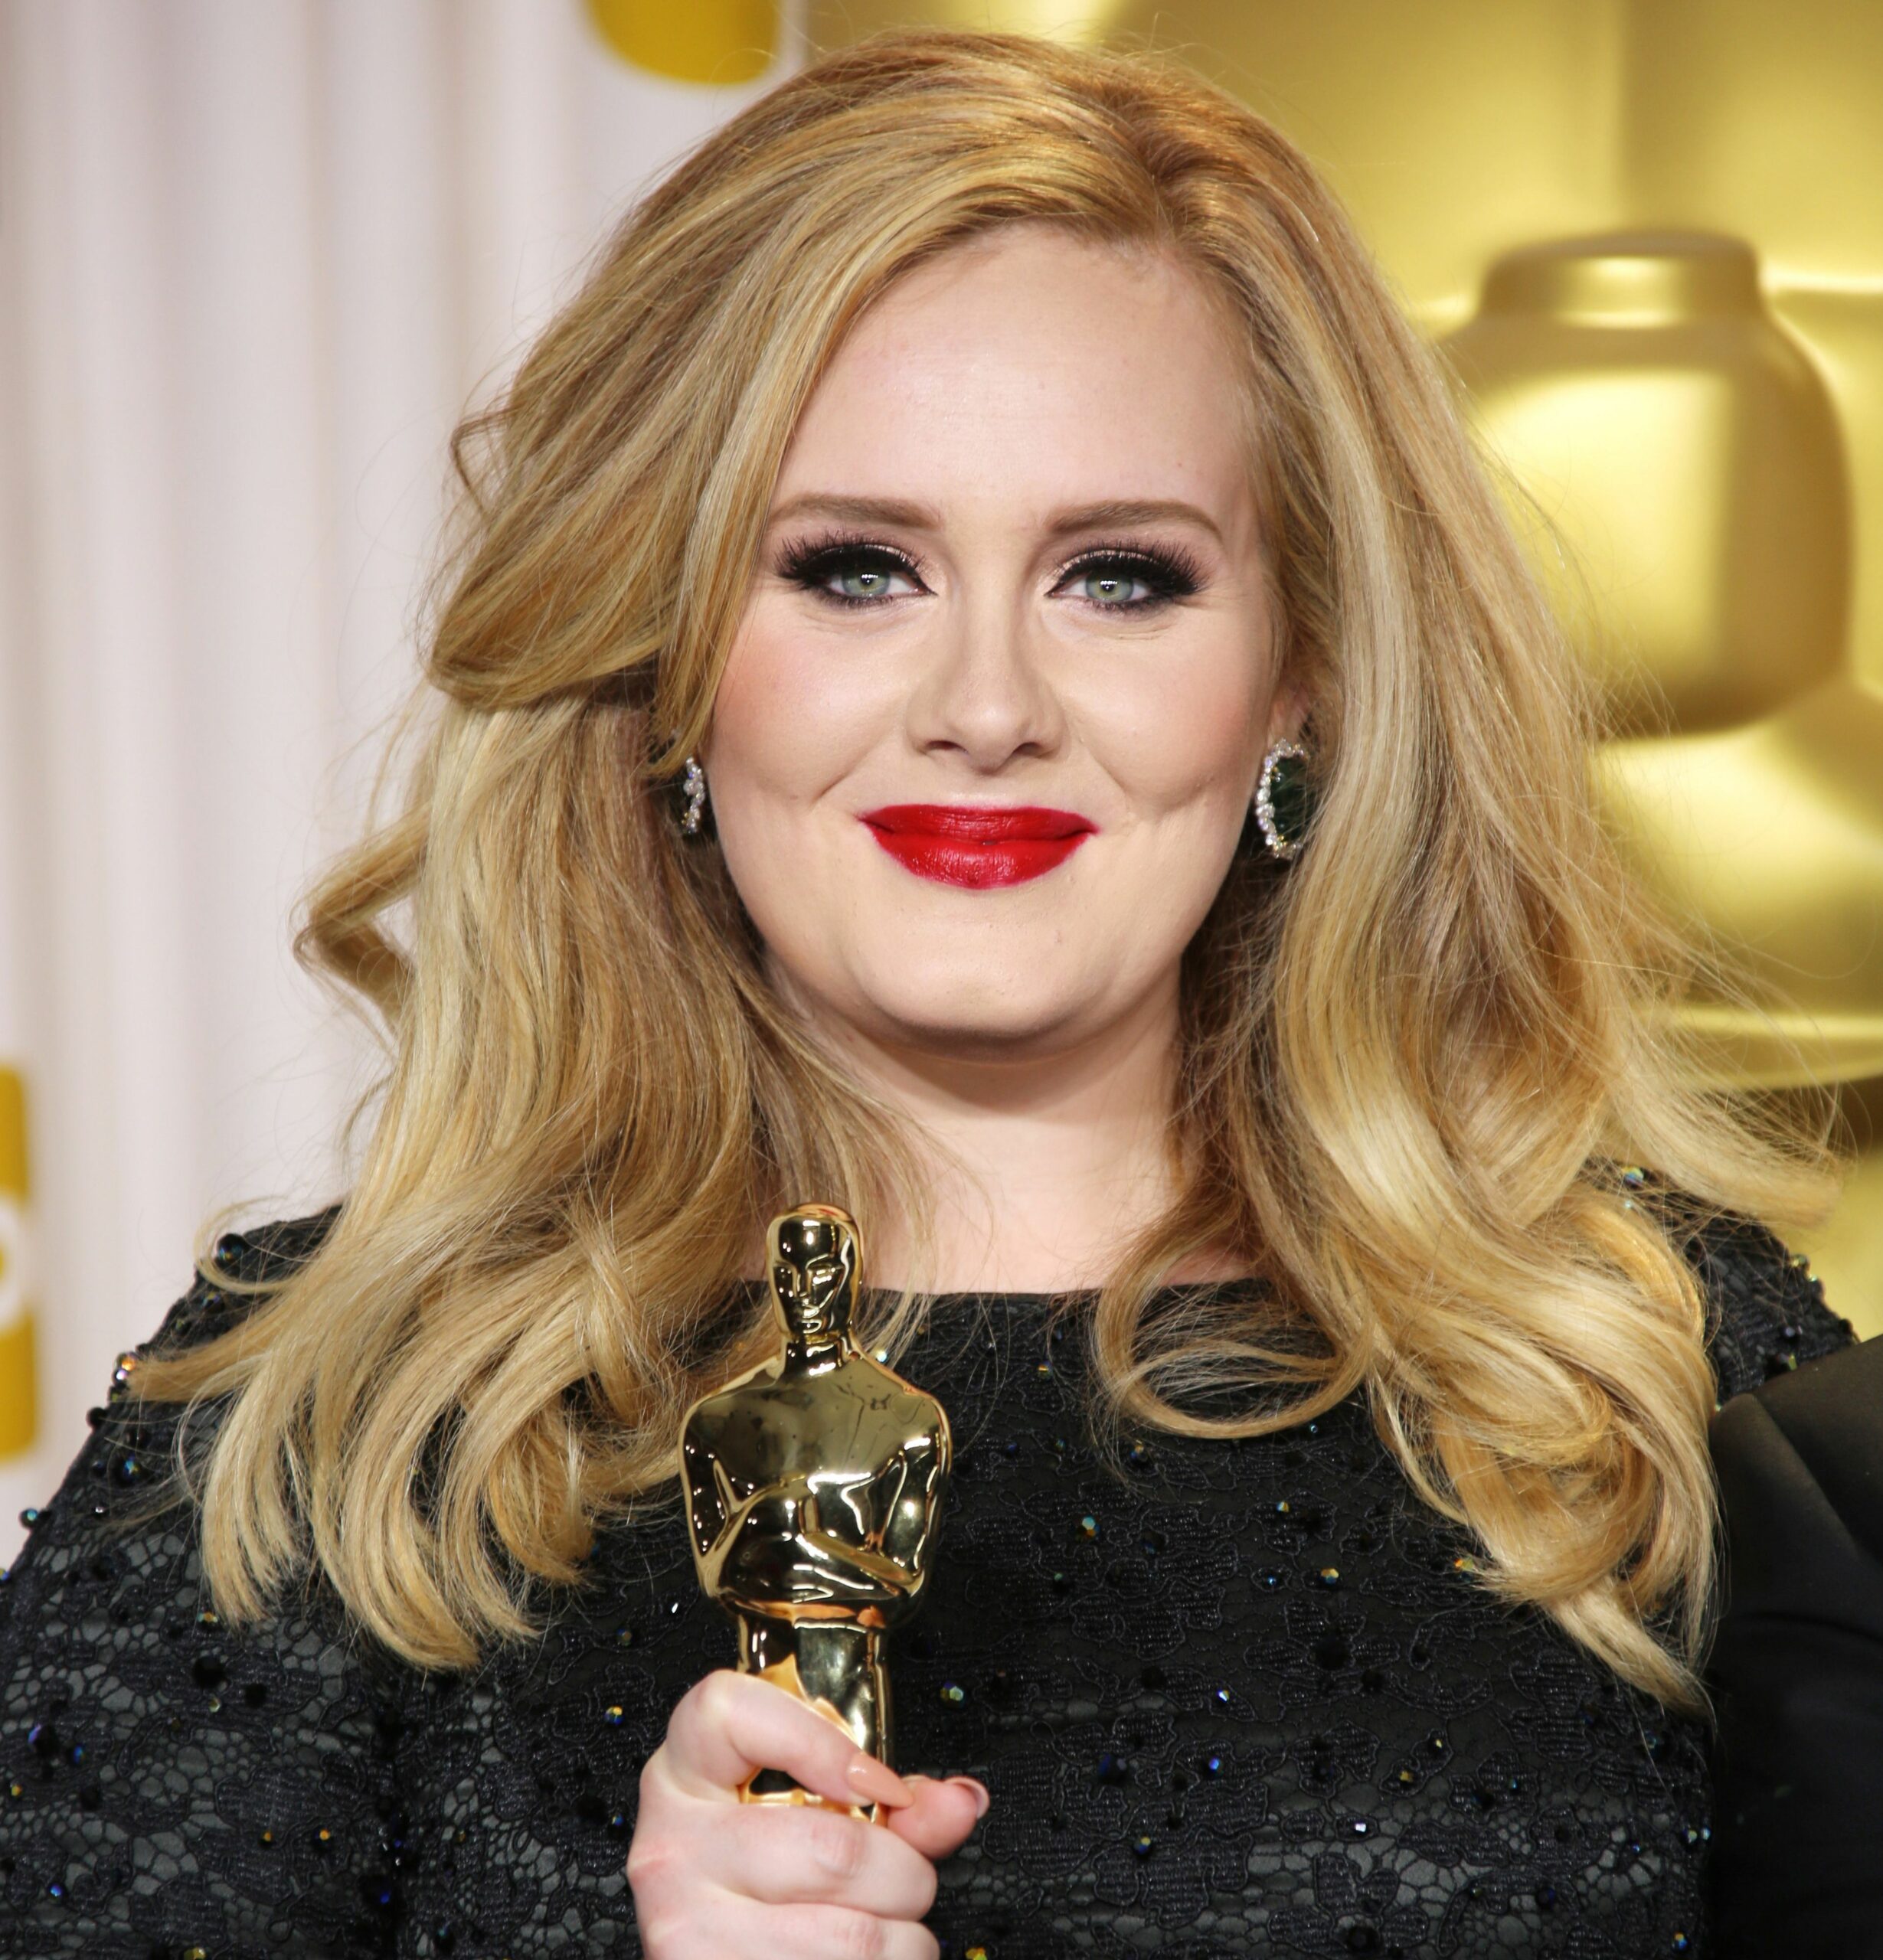 FOTO: Așa arată Adele nemachiată și necoafată! A pozat așa pe coperta unei reviste